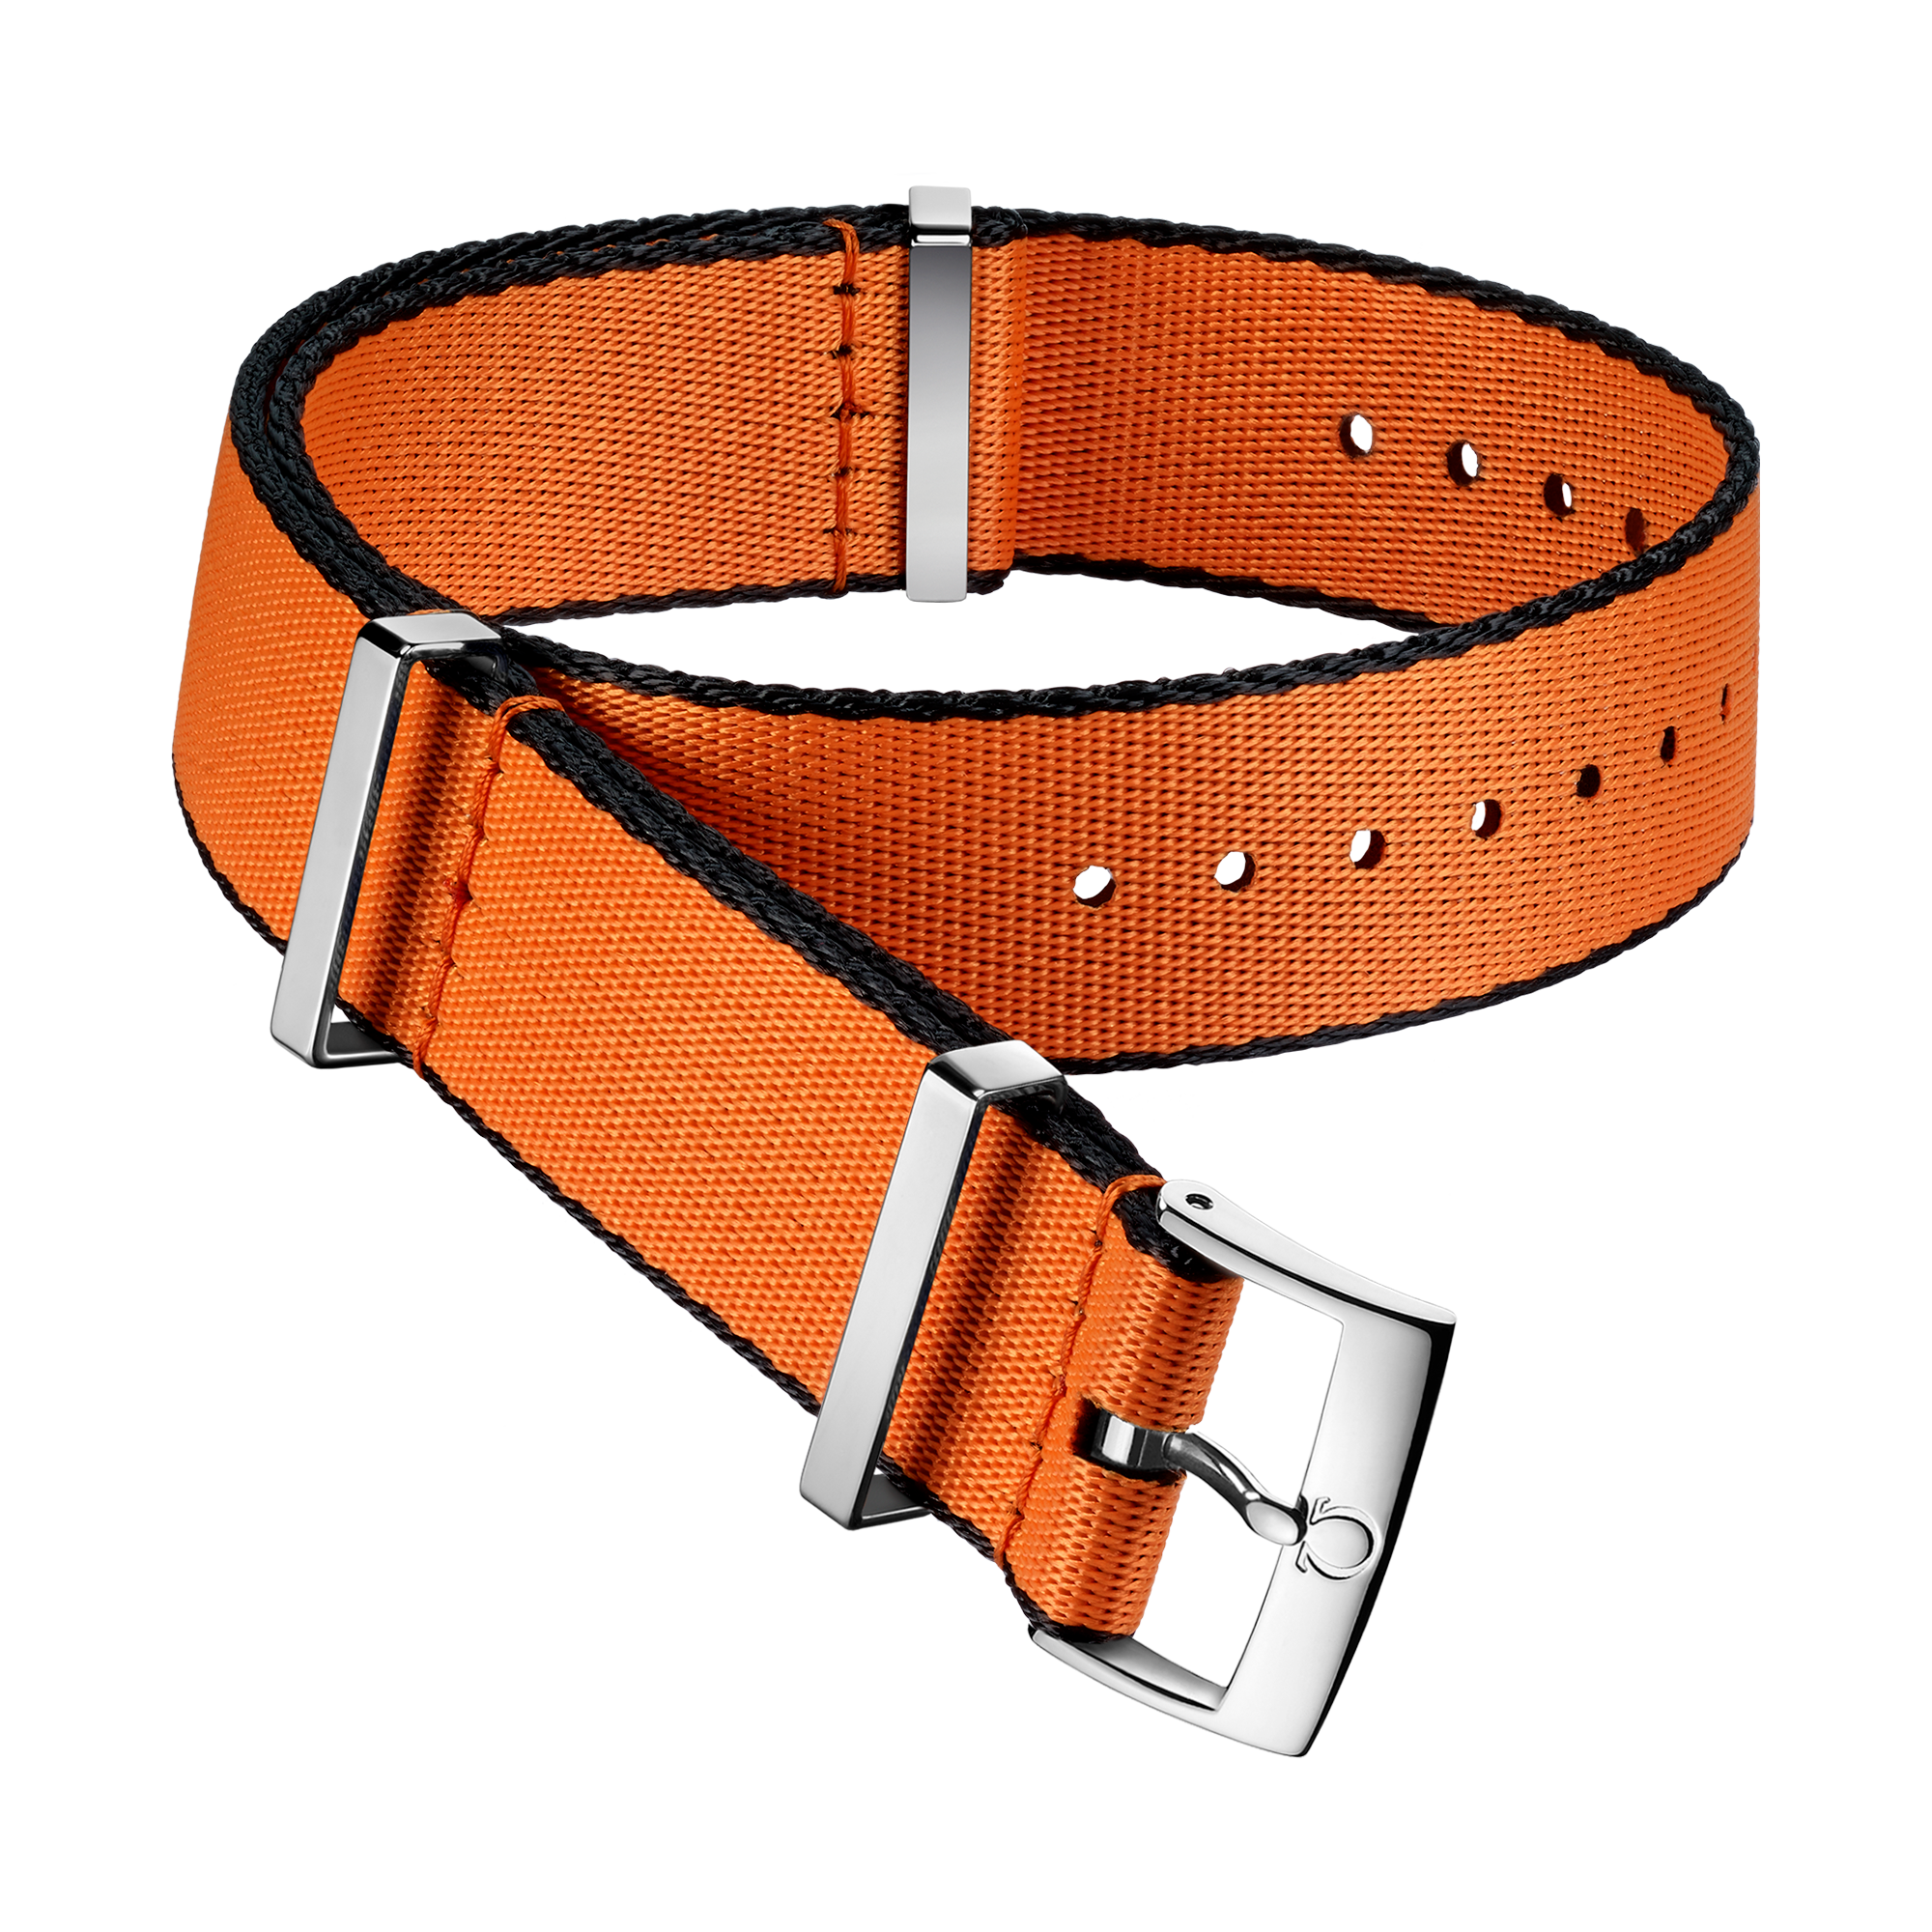 Bracelet NATO - Bracelet en polyamide orange aux bordures noires  - 031CWZ010648